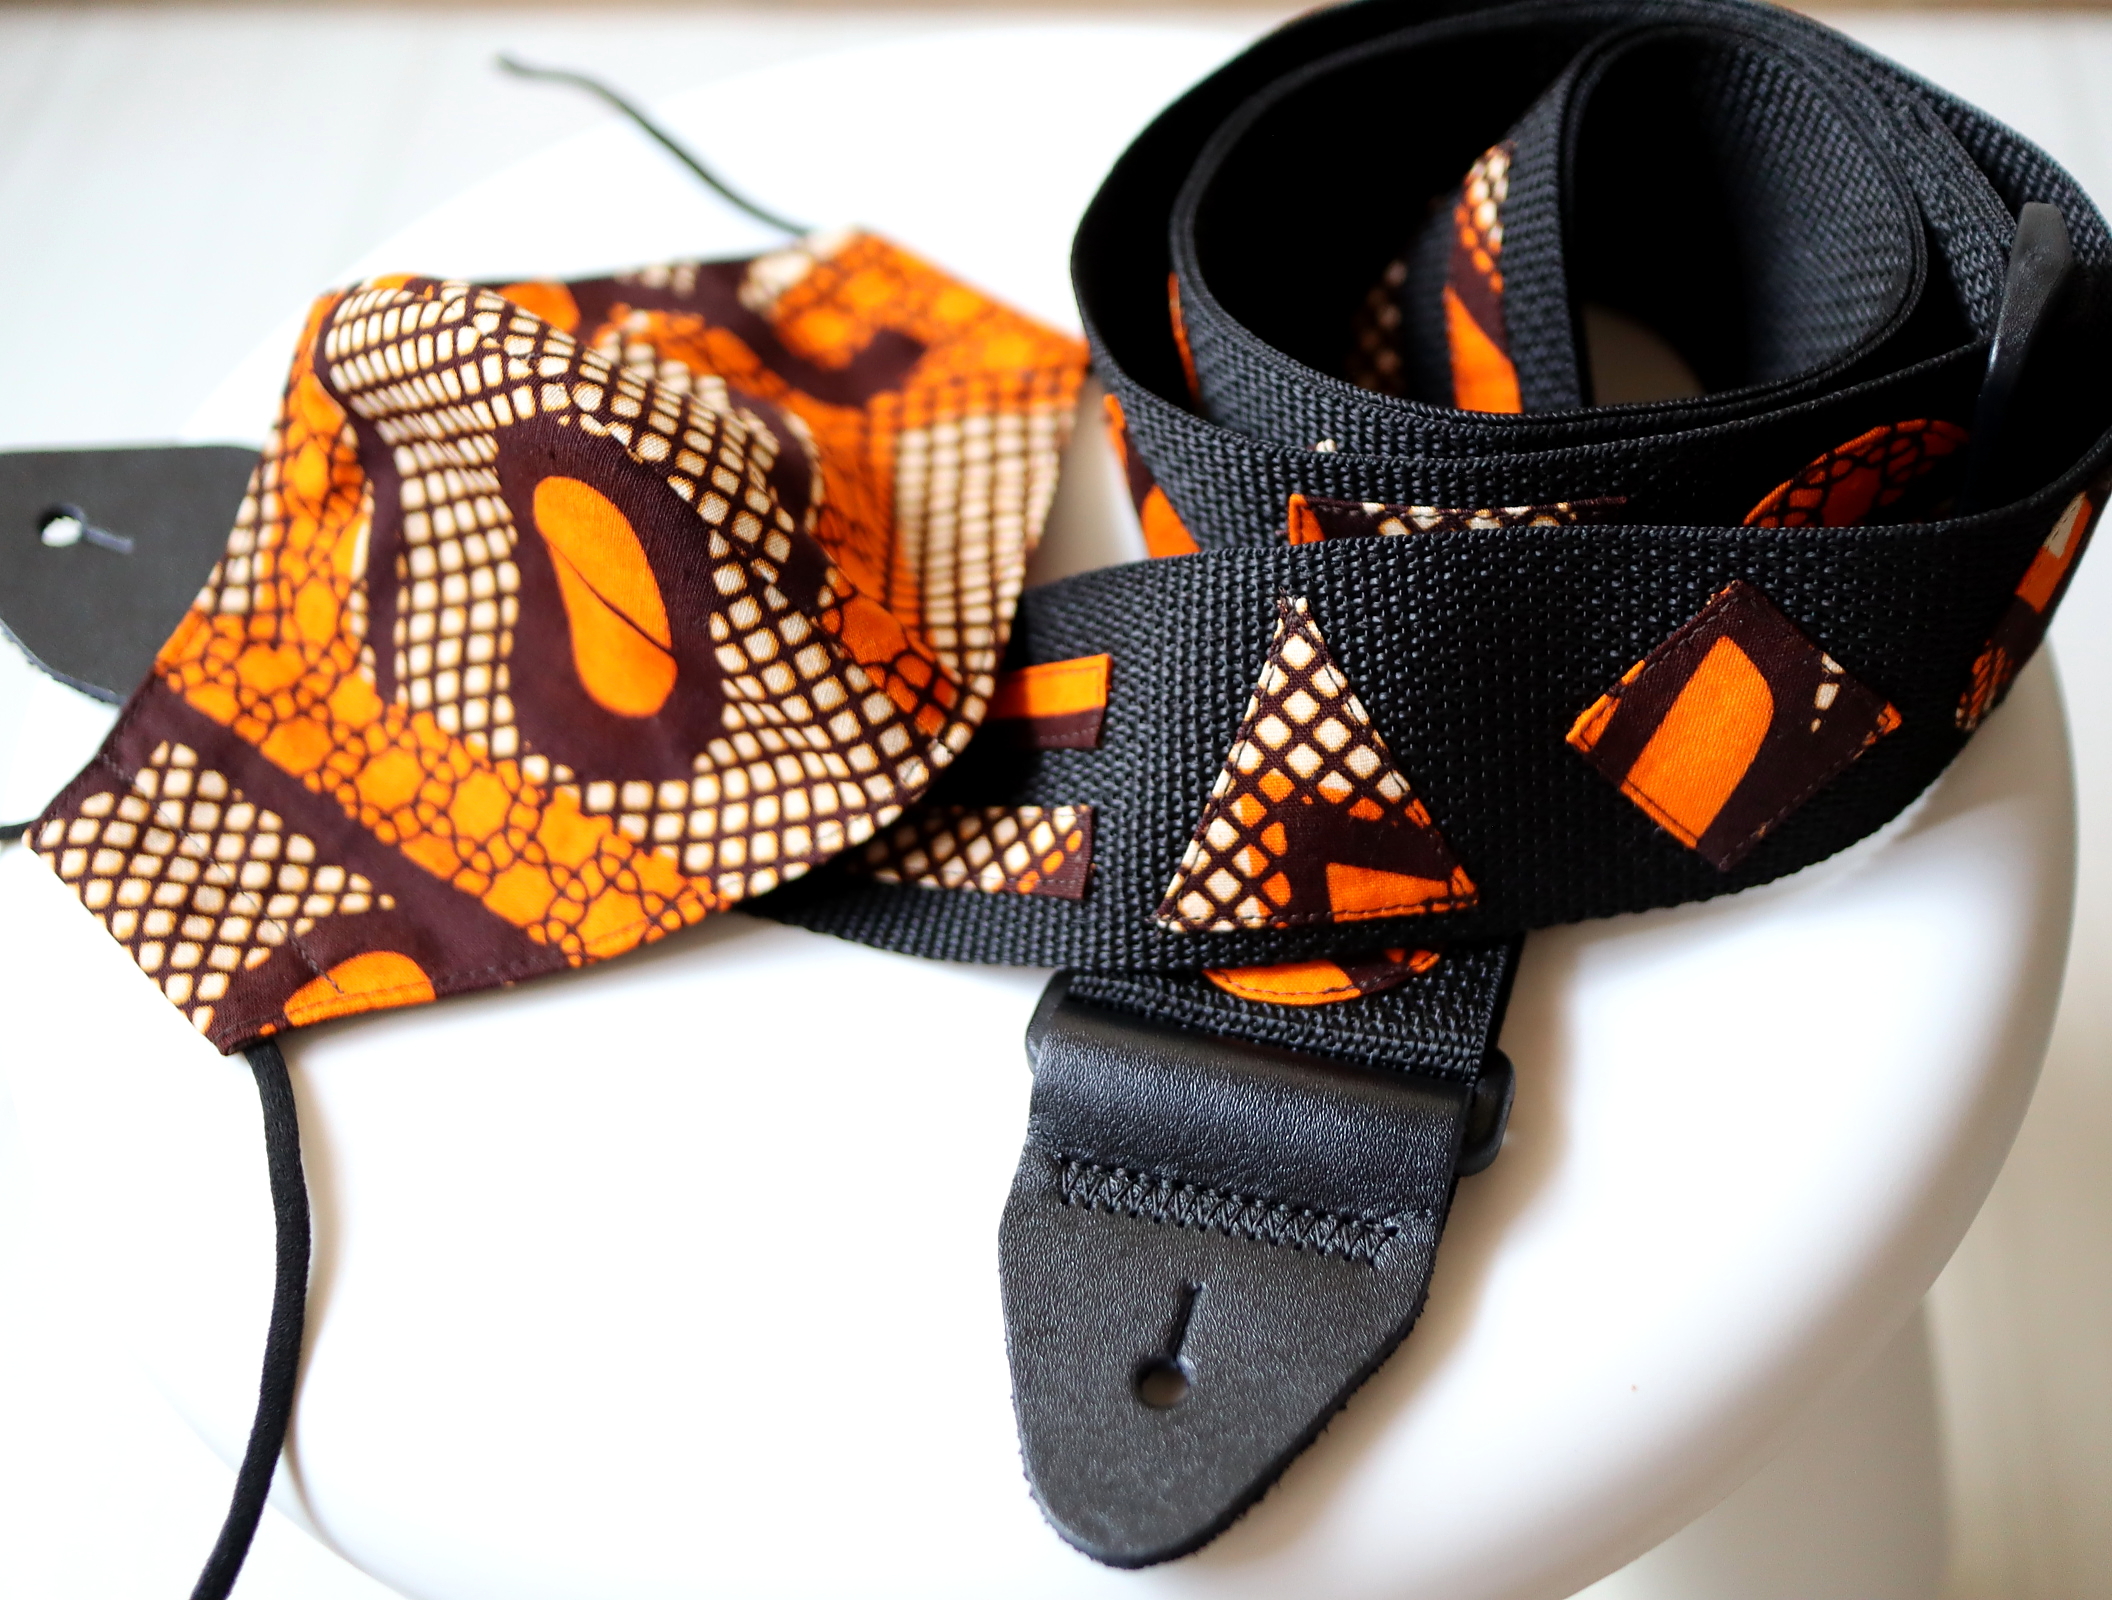 アフリカ布のギターベルト&アフリカ布マスク/アフリカ雑貨&オリジナル『kwa MALOGO/クワァマロゴ』